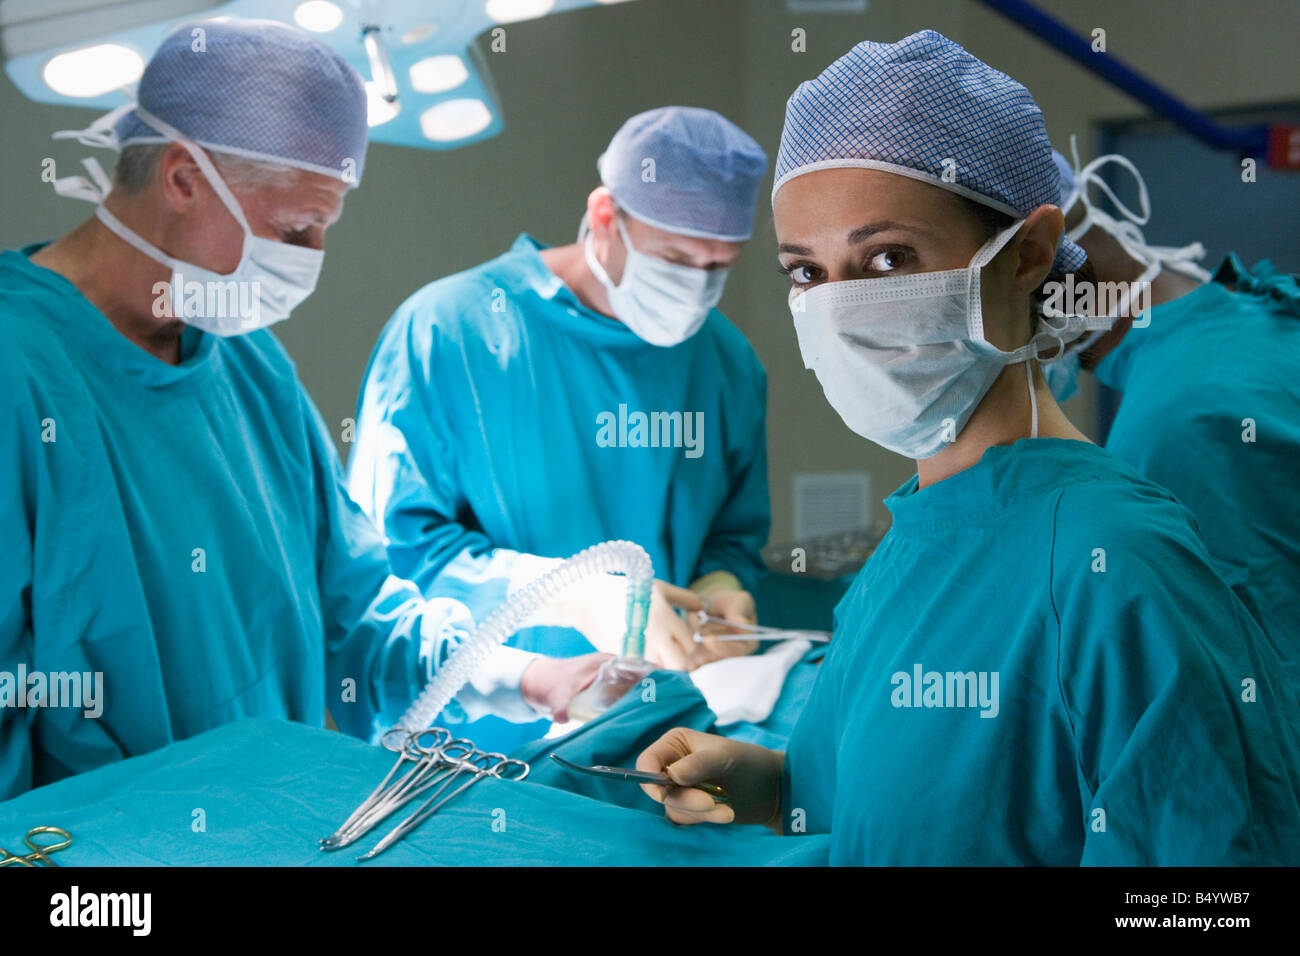 Quatre chirurgiens de se préparer à opérer sur un patient Banque D'Images